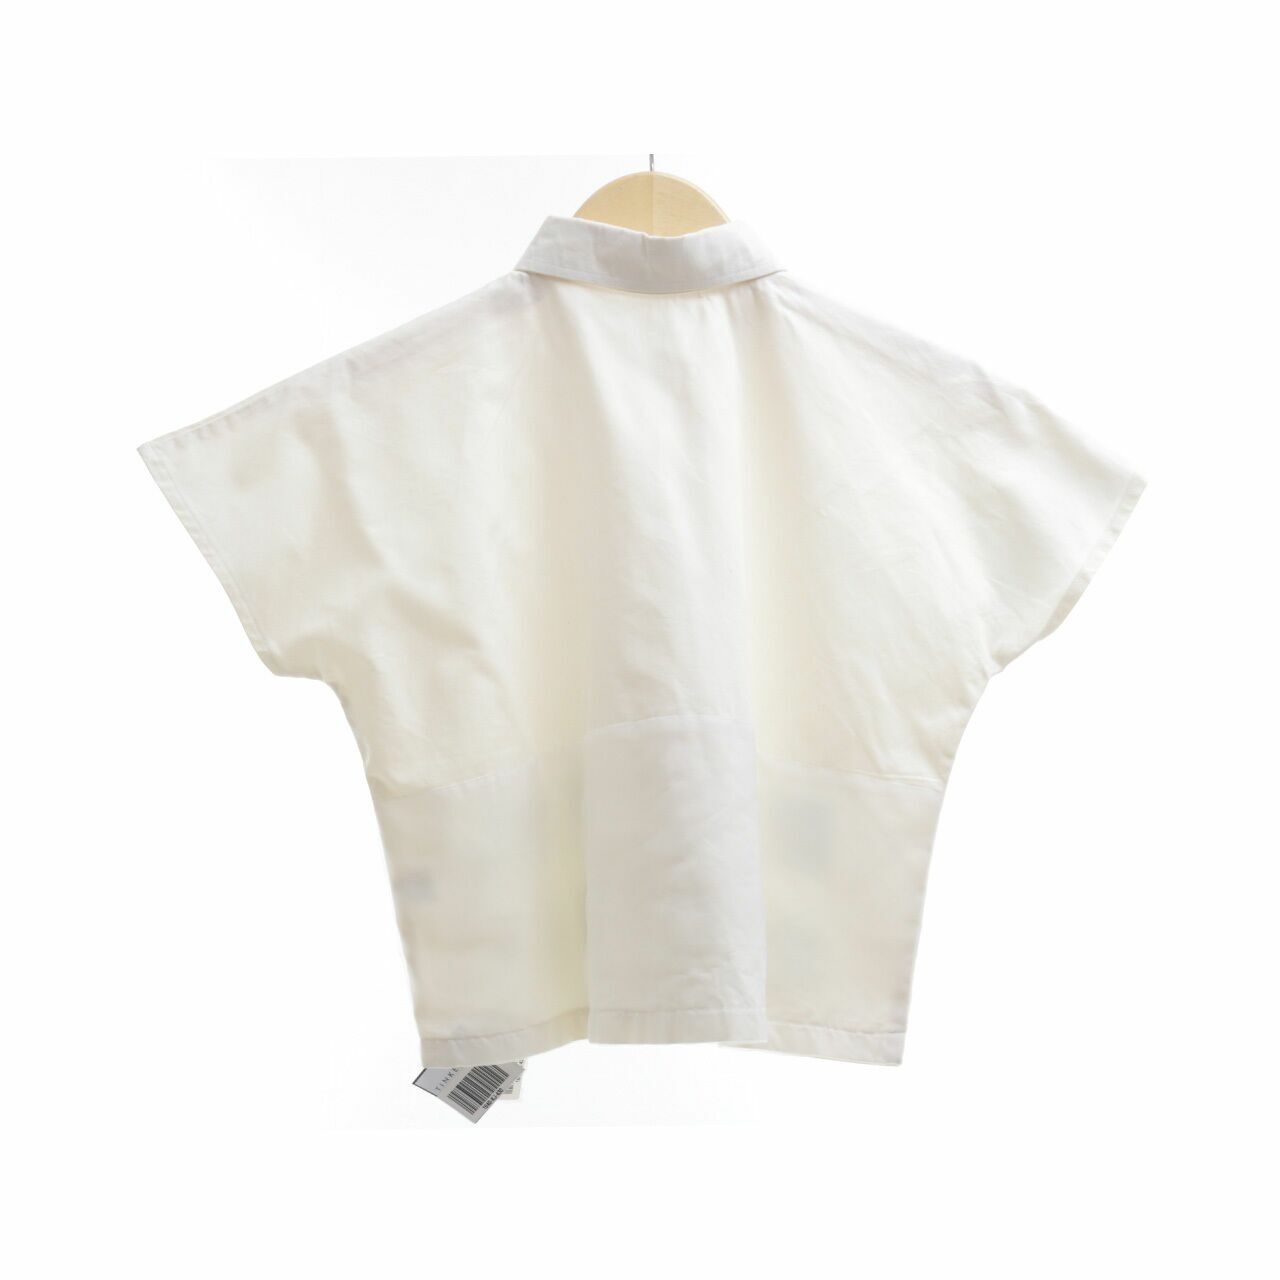 Maen Kaen Off White Shirt